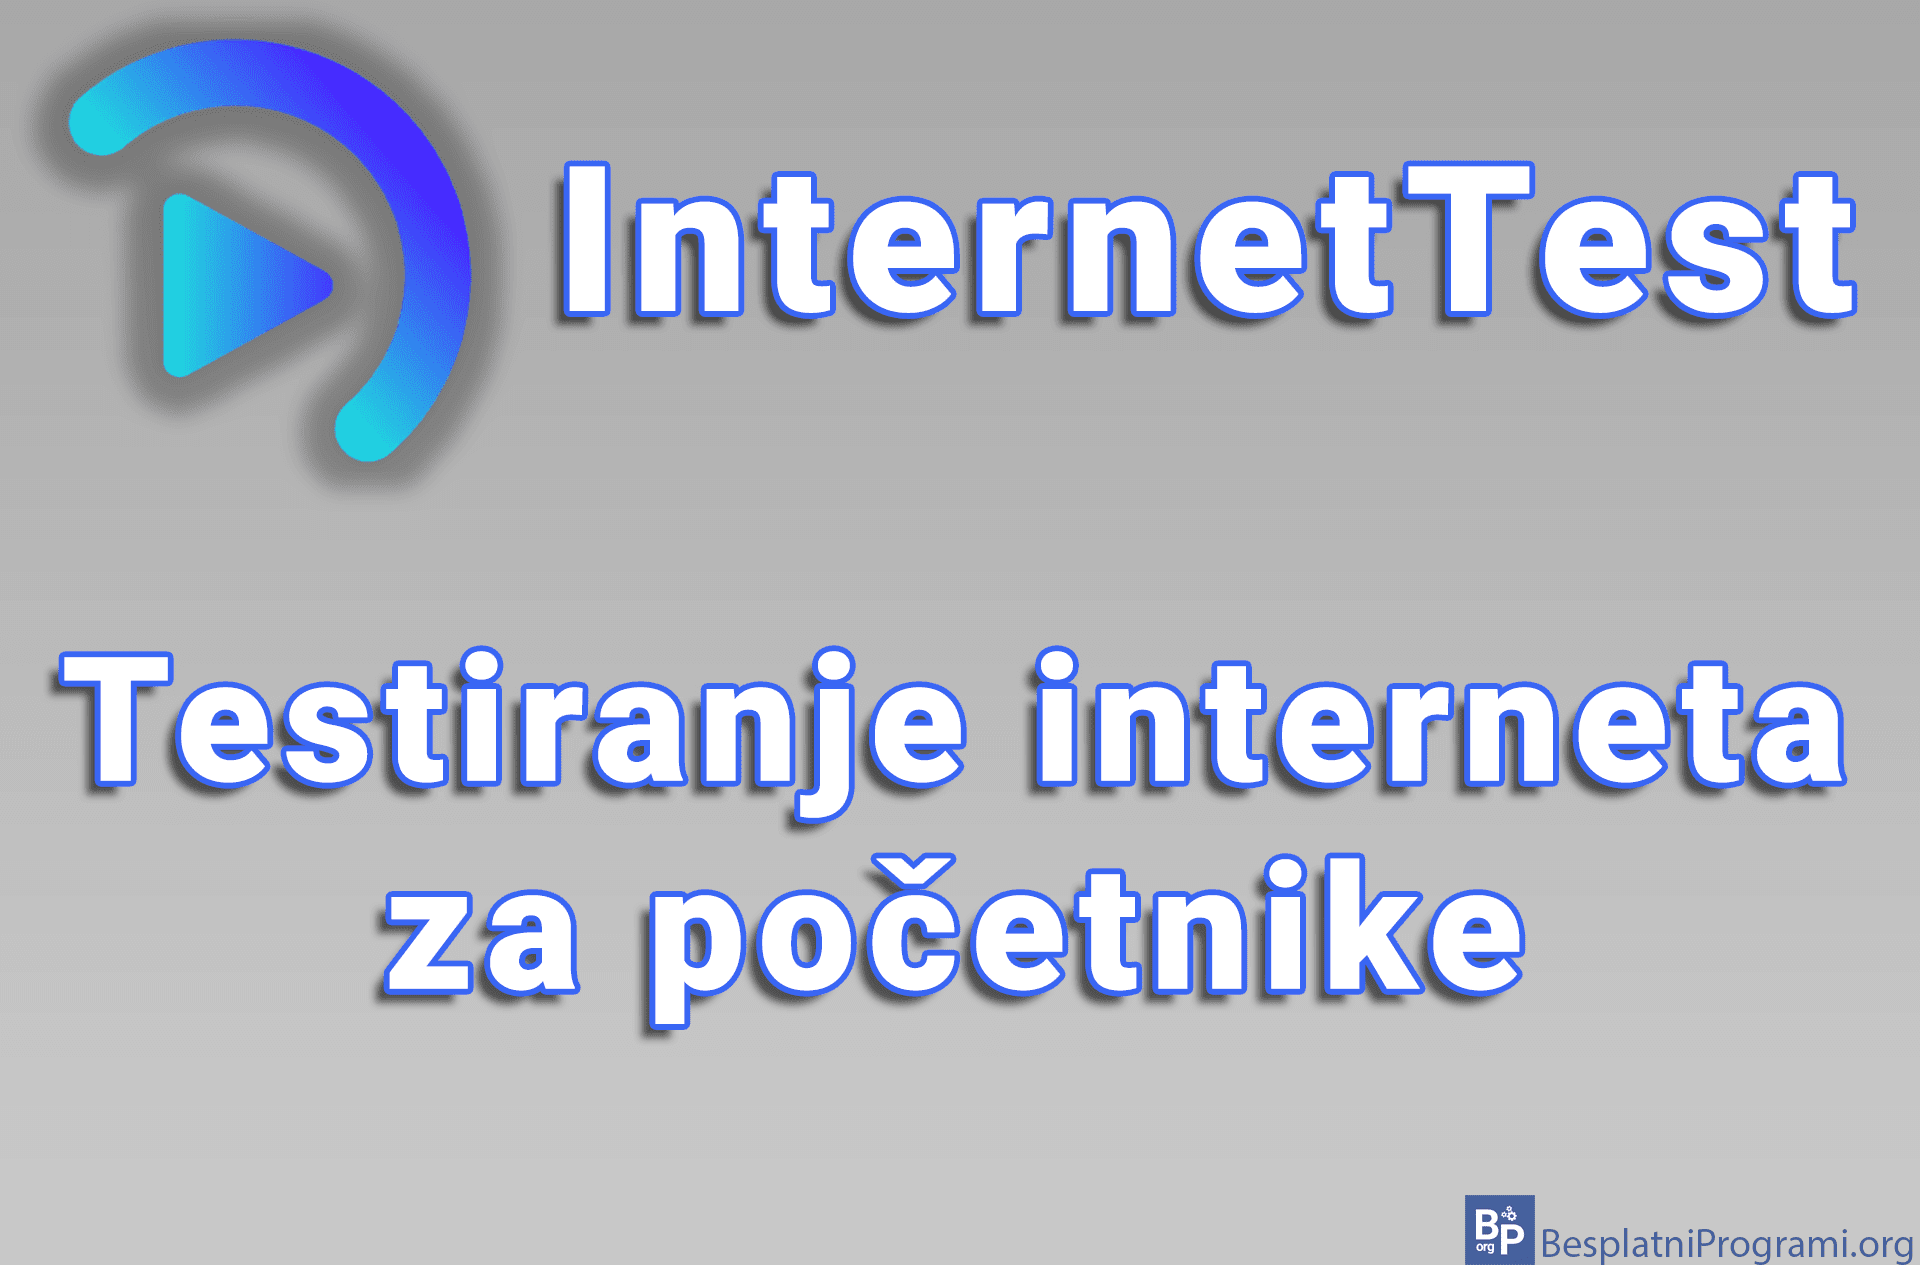 InternetTest - Testiranje interneta za početnike